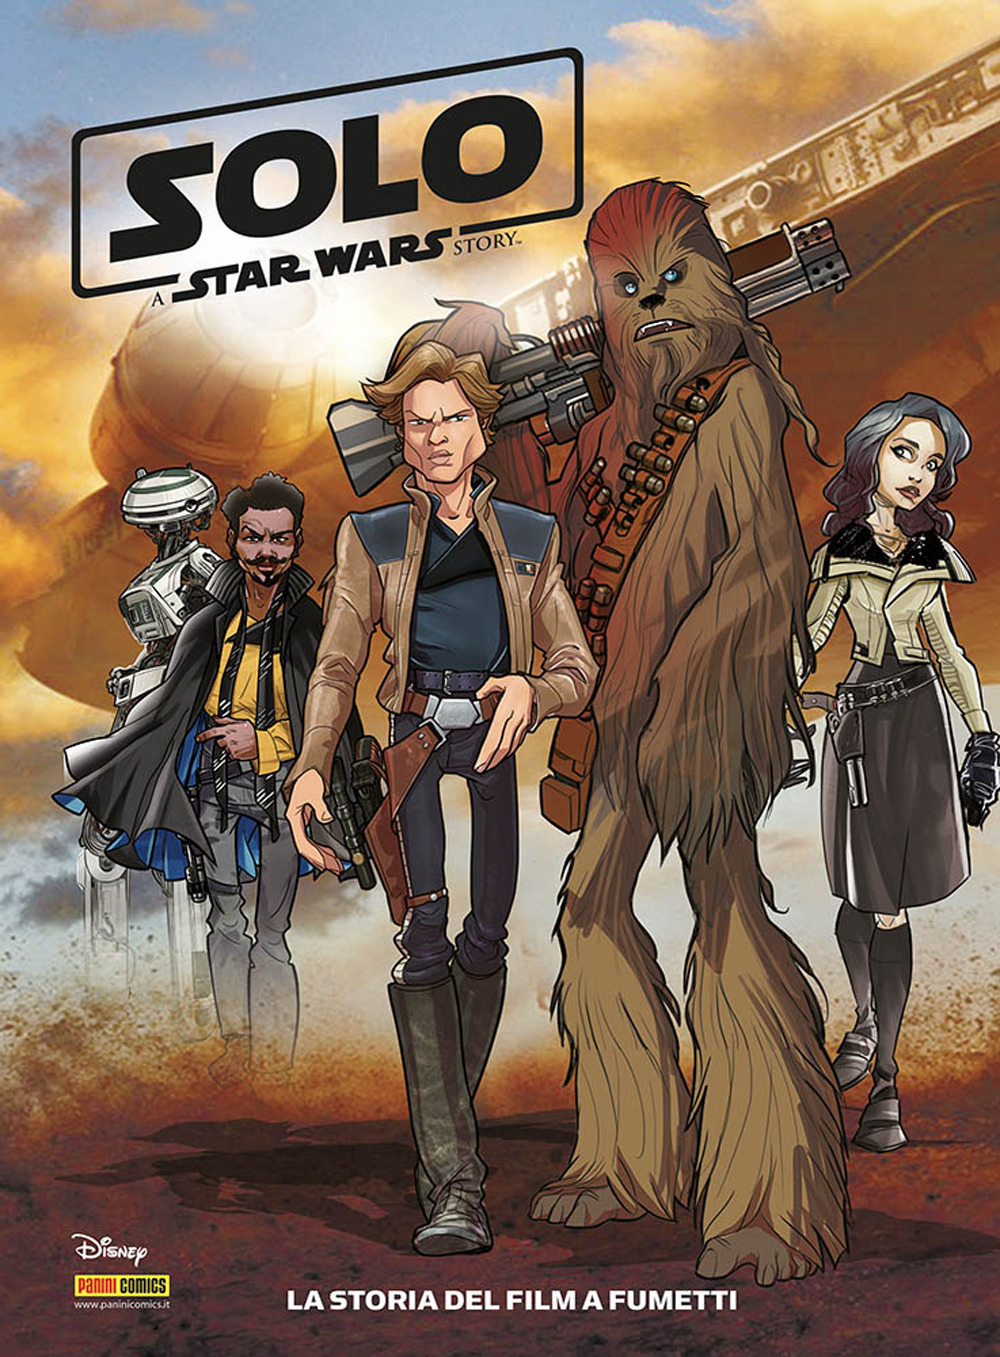 Solo. A Star Wars story. La storia del film a fumetti